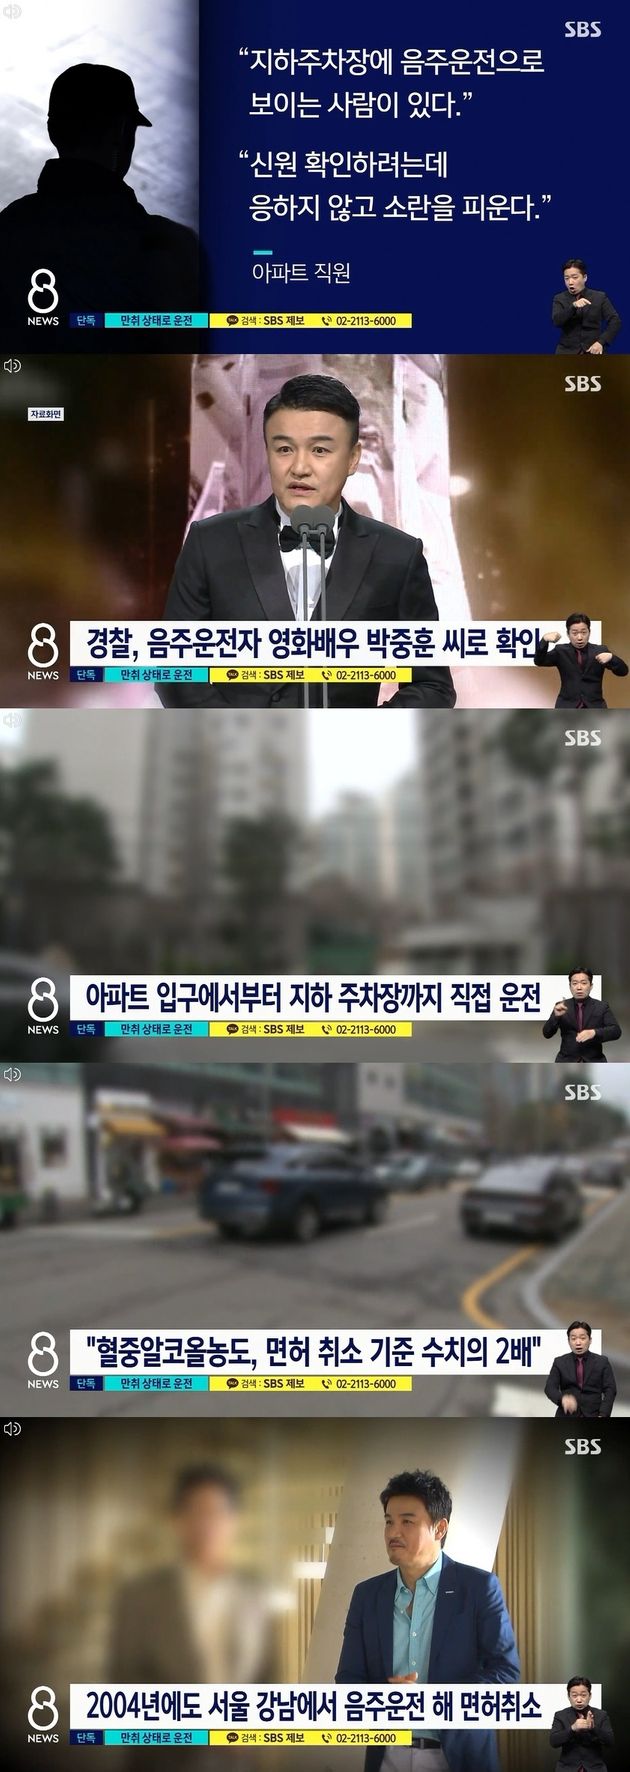 SBS 8 뉴스 보도 캡처